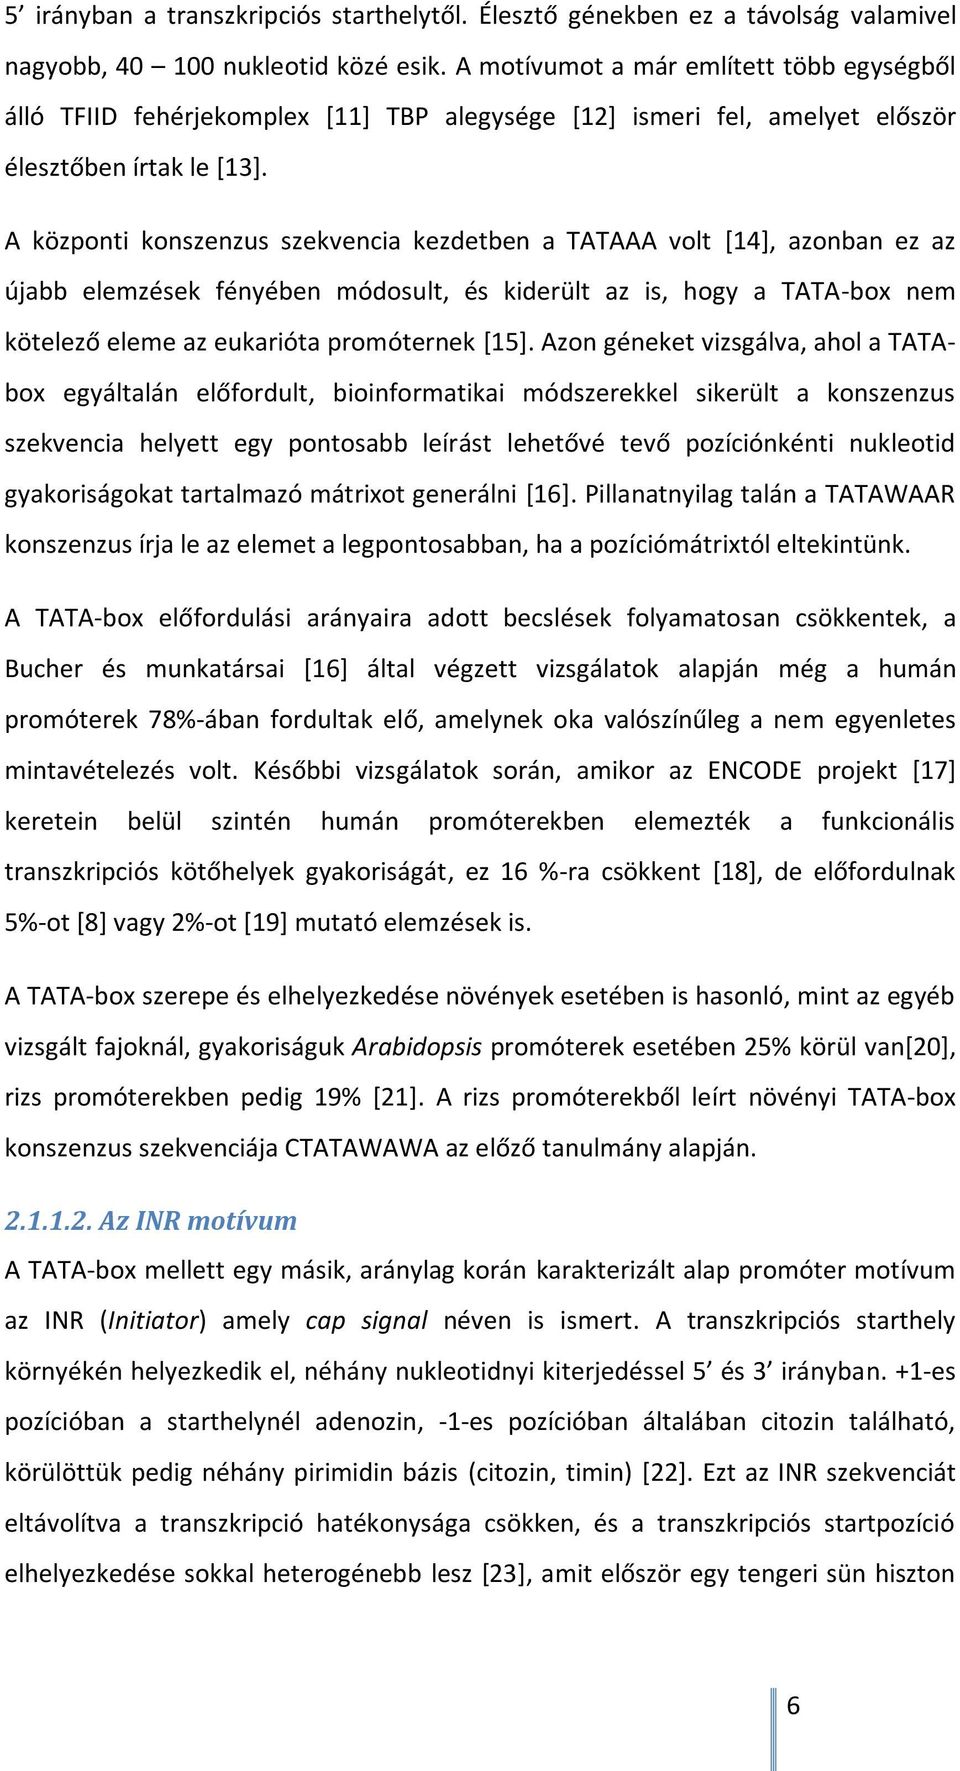 A központi konszenzus szekvencia kezdetben a TATAAA volt [14], azonban ez az újabb elemzések fényében módosult, és kiderült az is, hogy a TATA-box nem kötelező eleme az eukarióta promóternek [15].